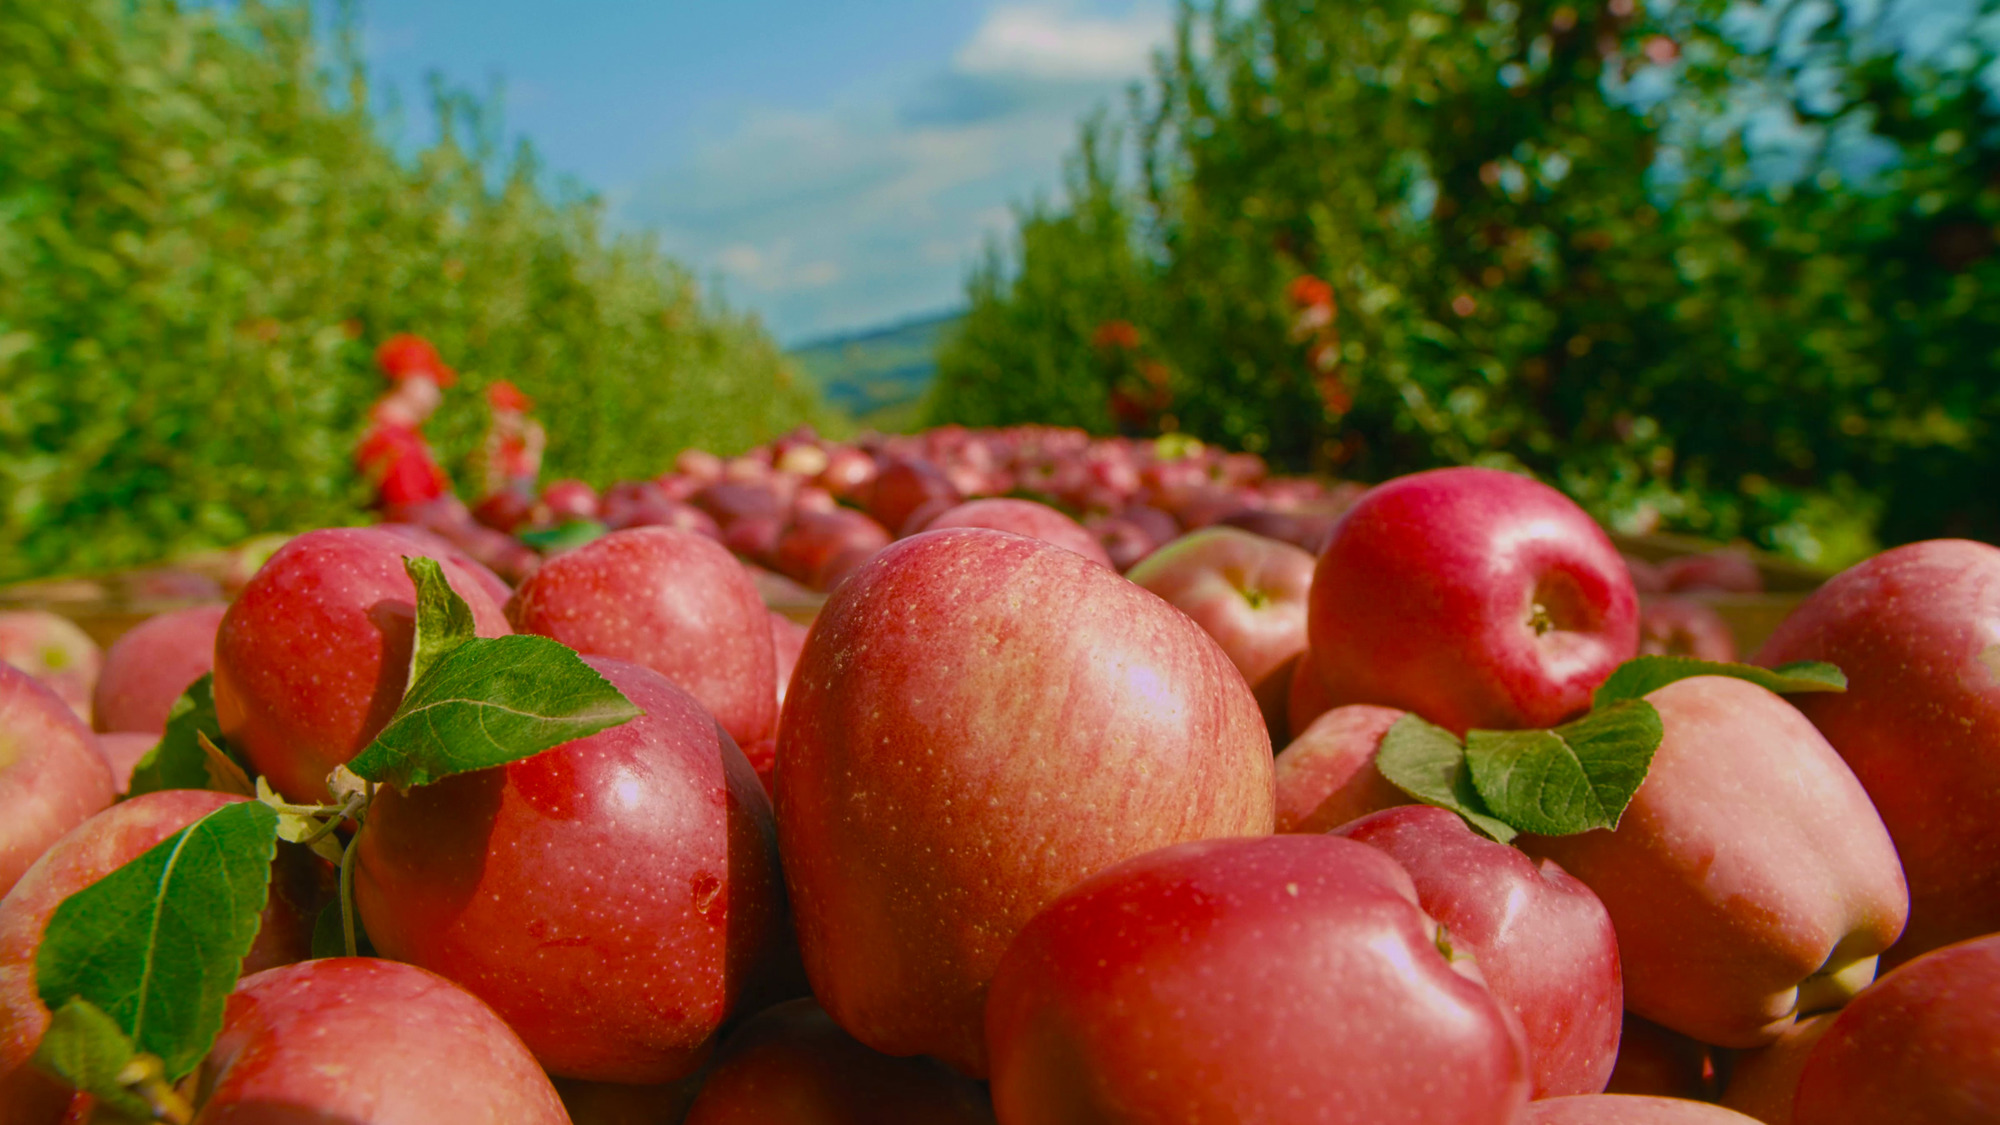 Узнайте путь кубанских яблок – от сбора урожая до упаковки любимого сока «ДАРЫ КУБАНИ»!